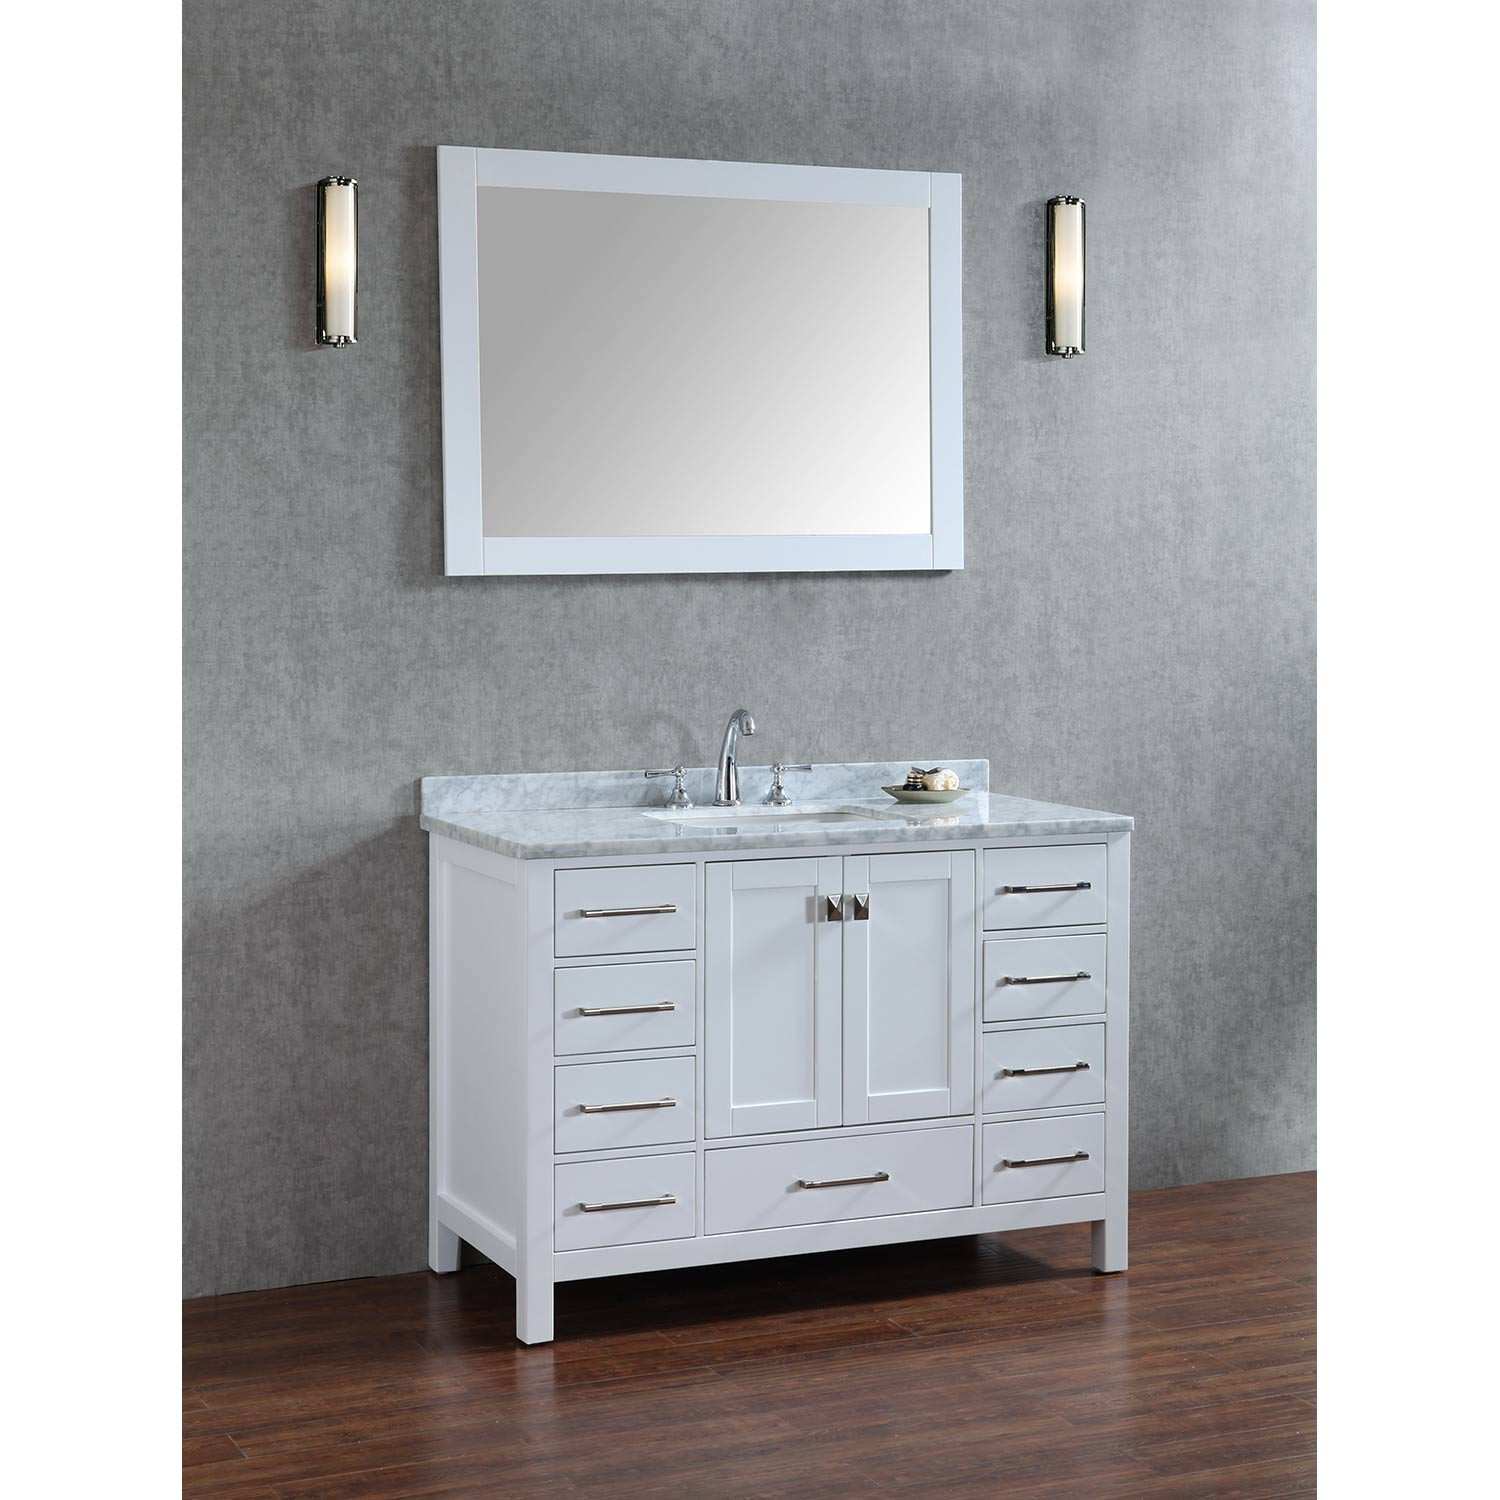 Real Wood Bathroom Vanities
 Buy Vincent 48 Inch Solid Wood Single Bathroom Vanity in